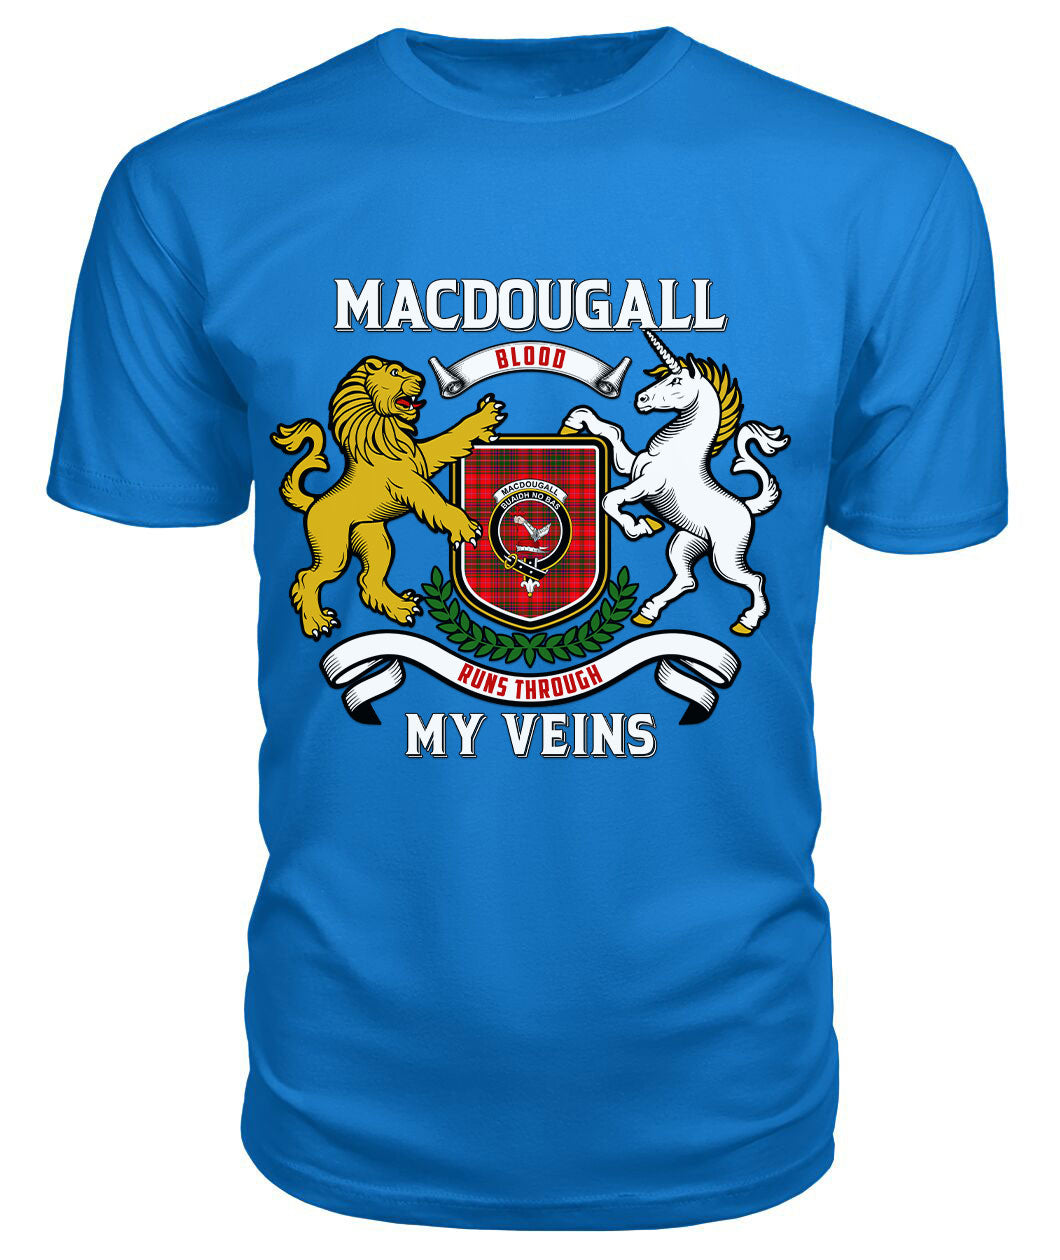 MacDougall Modern Tartan Crest 2D T-shirt - Blood Runs Through My Veins Style